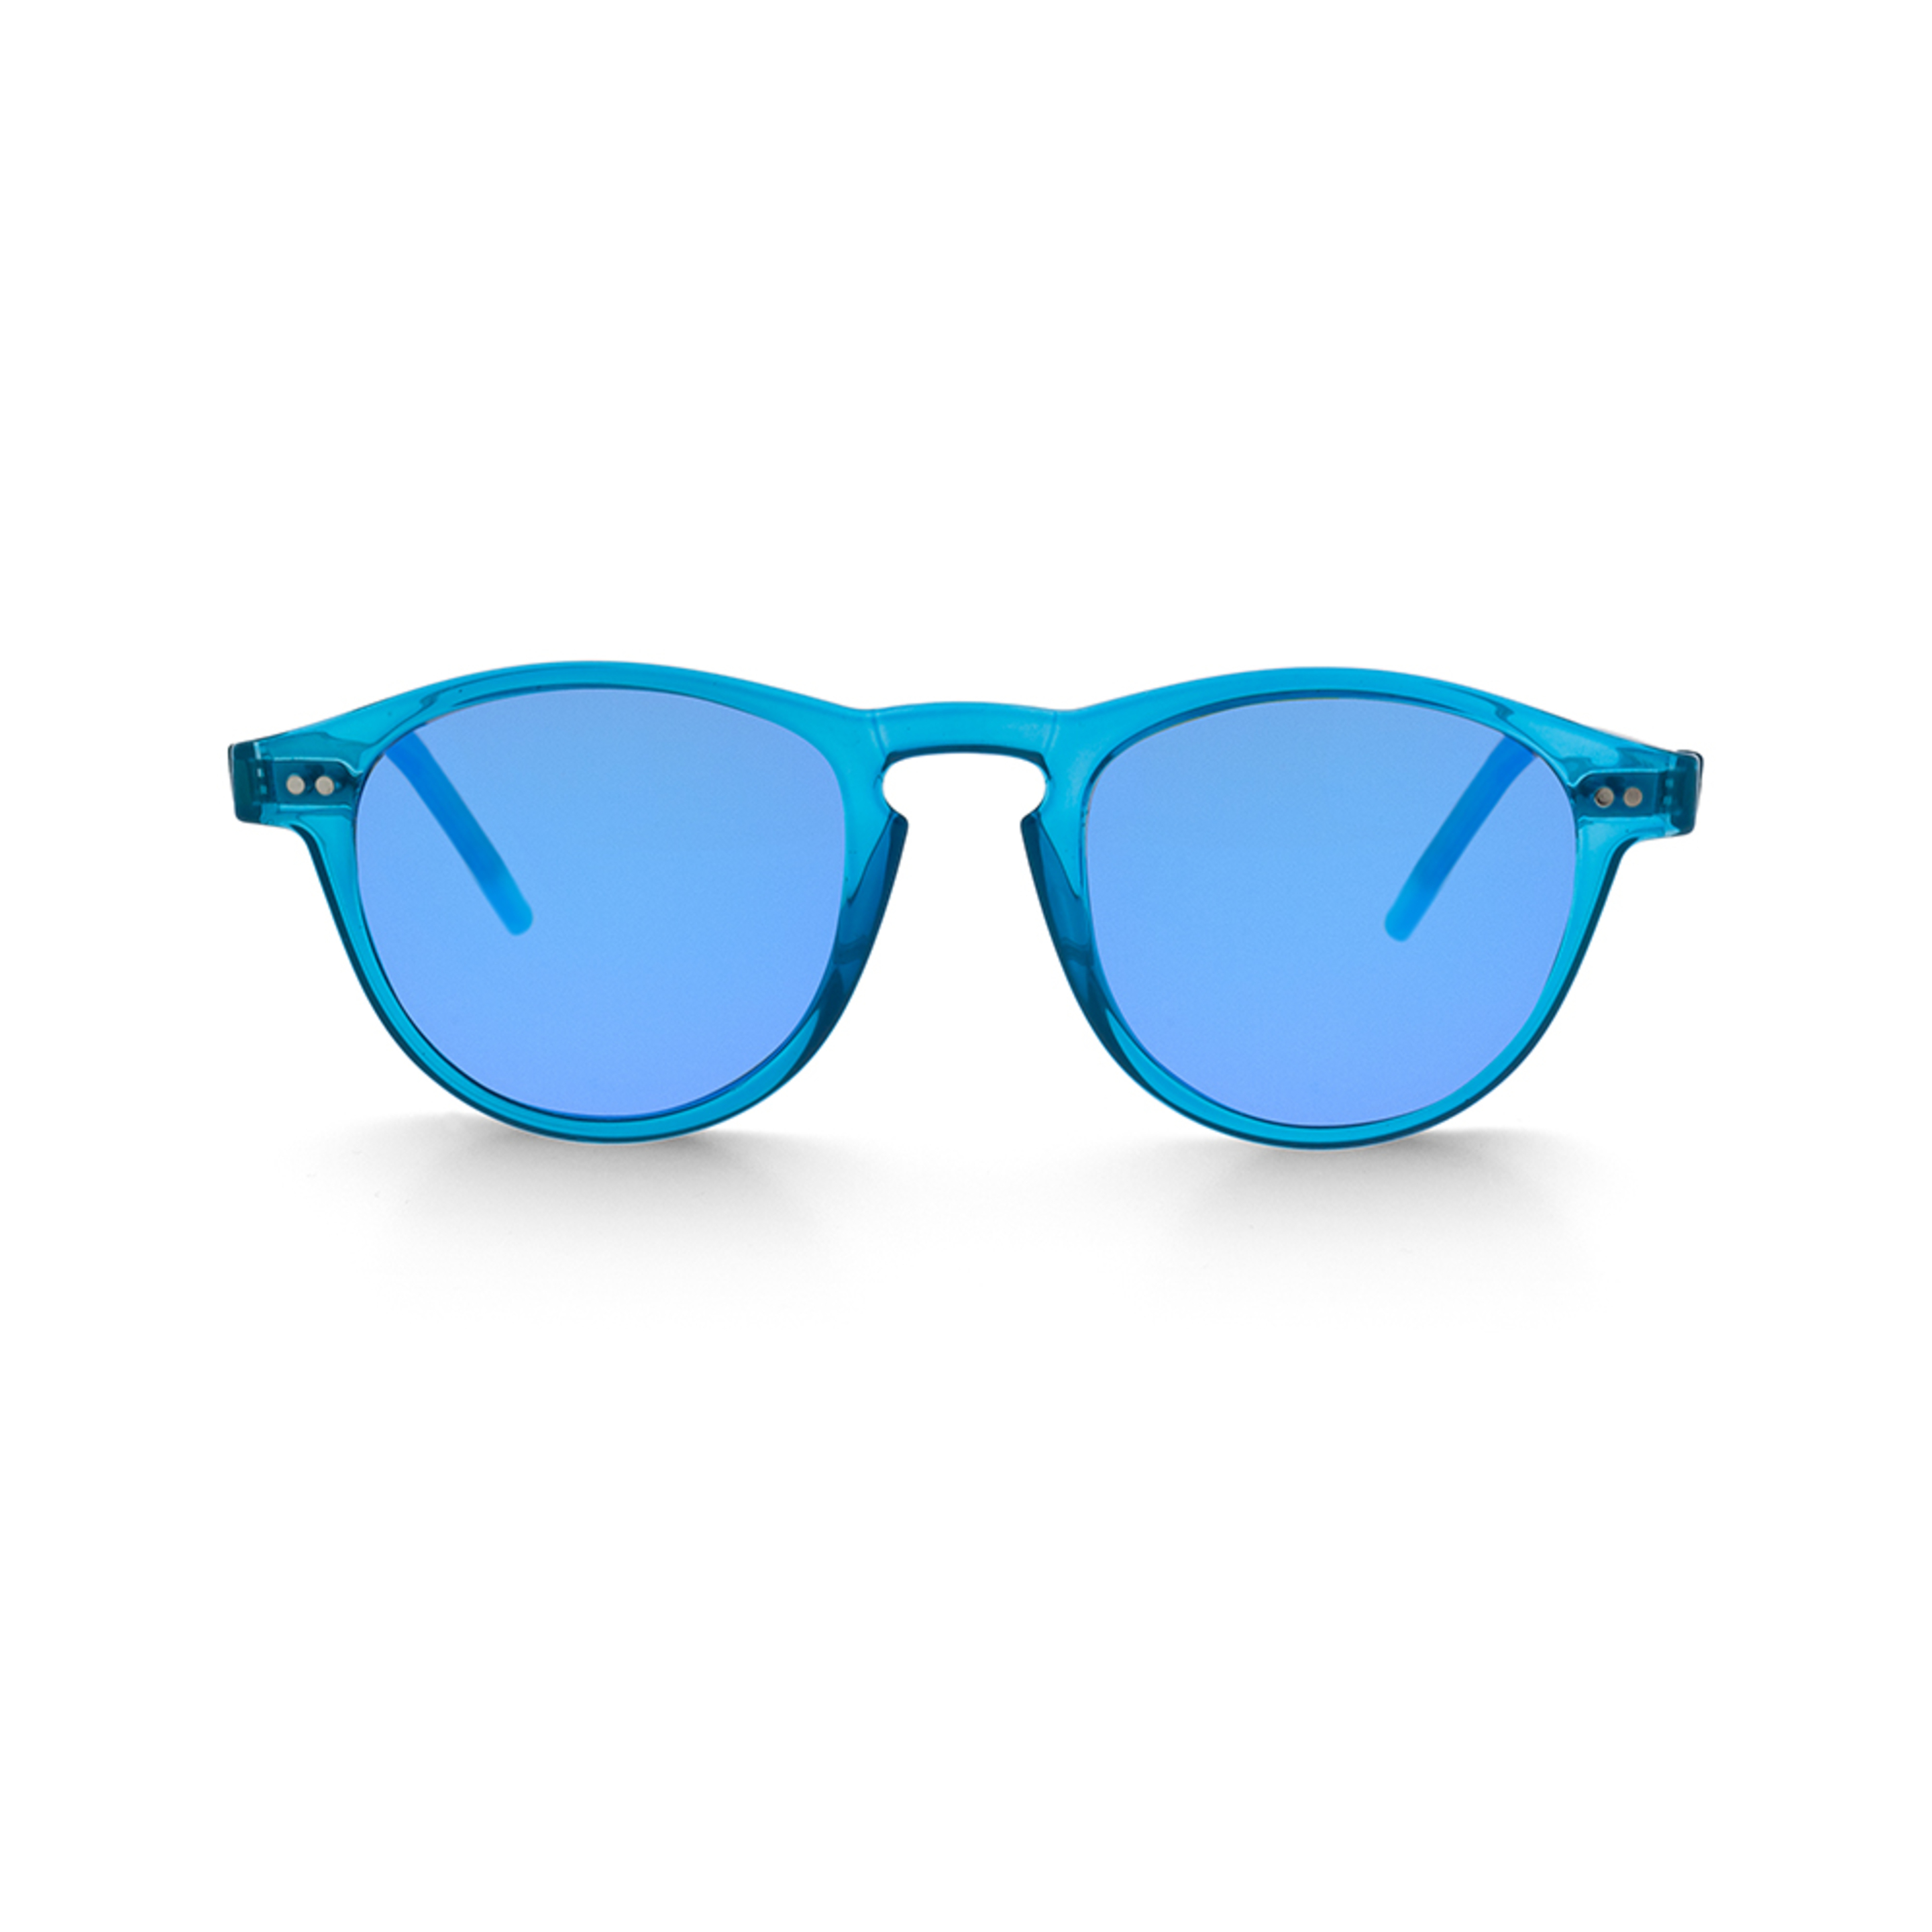 Gafas De Sol Aspem Crowley - Azul Turquesa - Redonda  MKP